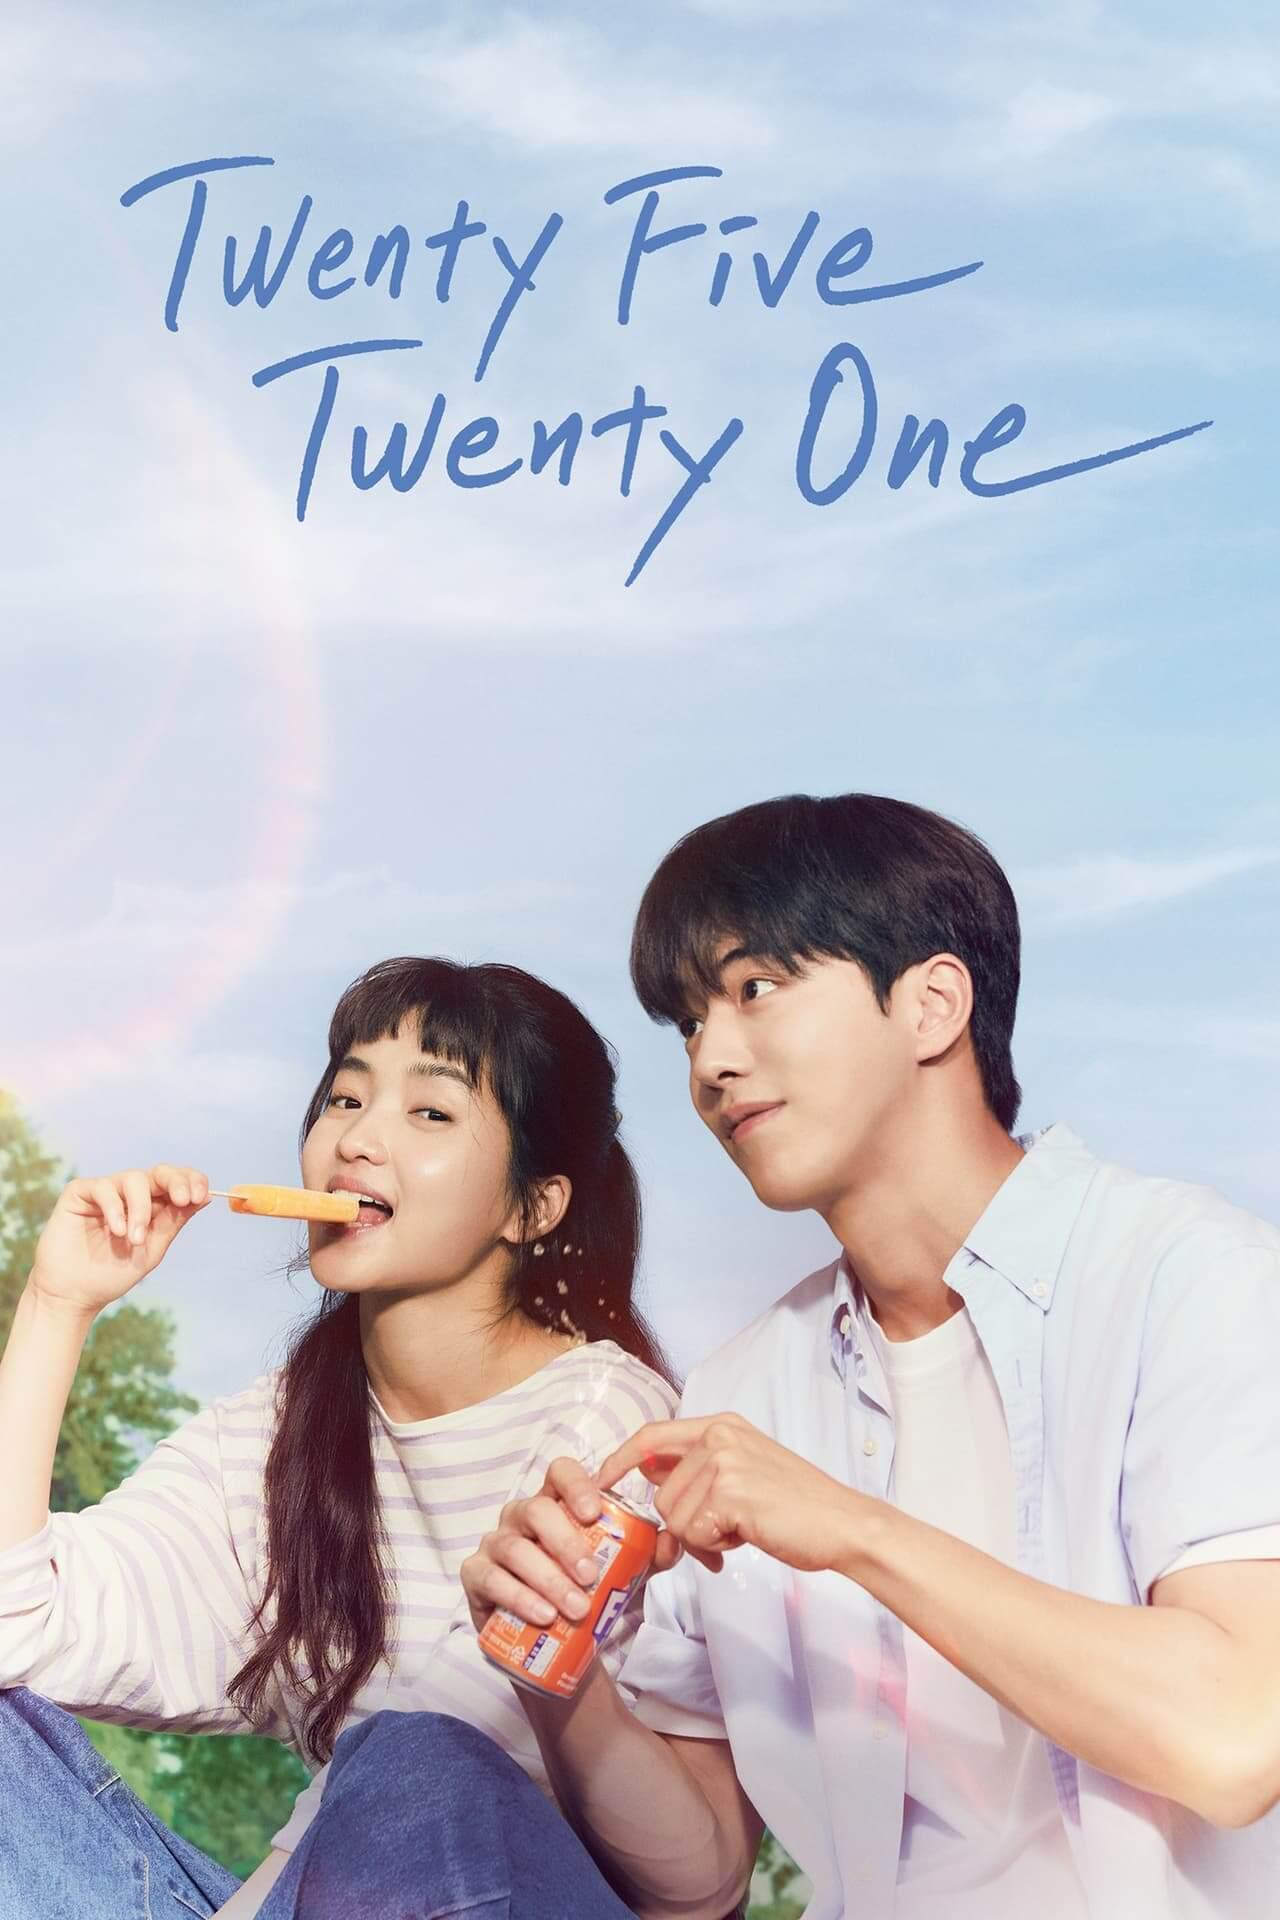 TV ratings for Twenty-Five Twenty-One (스물다섯 스물하나) in Norway. tvN TV series